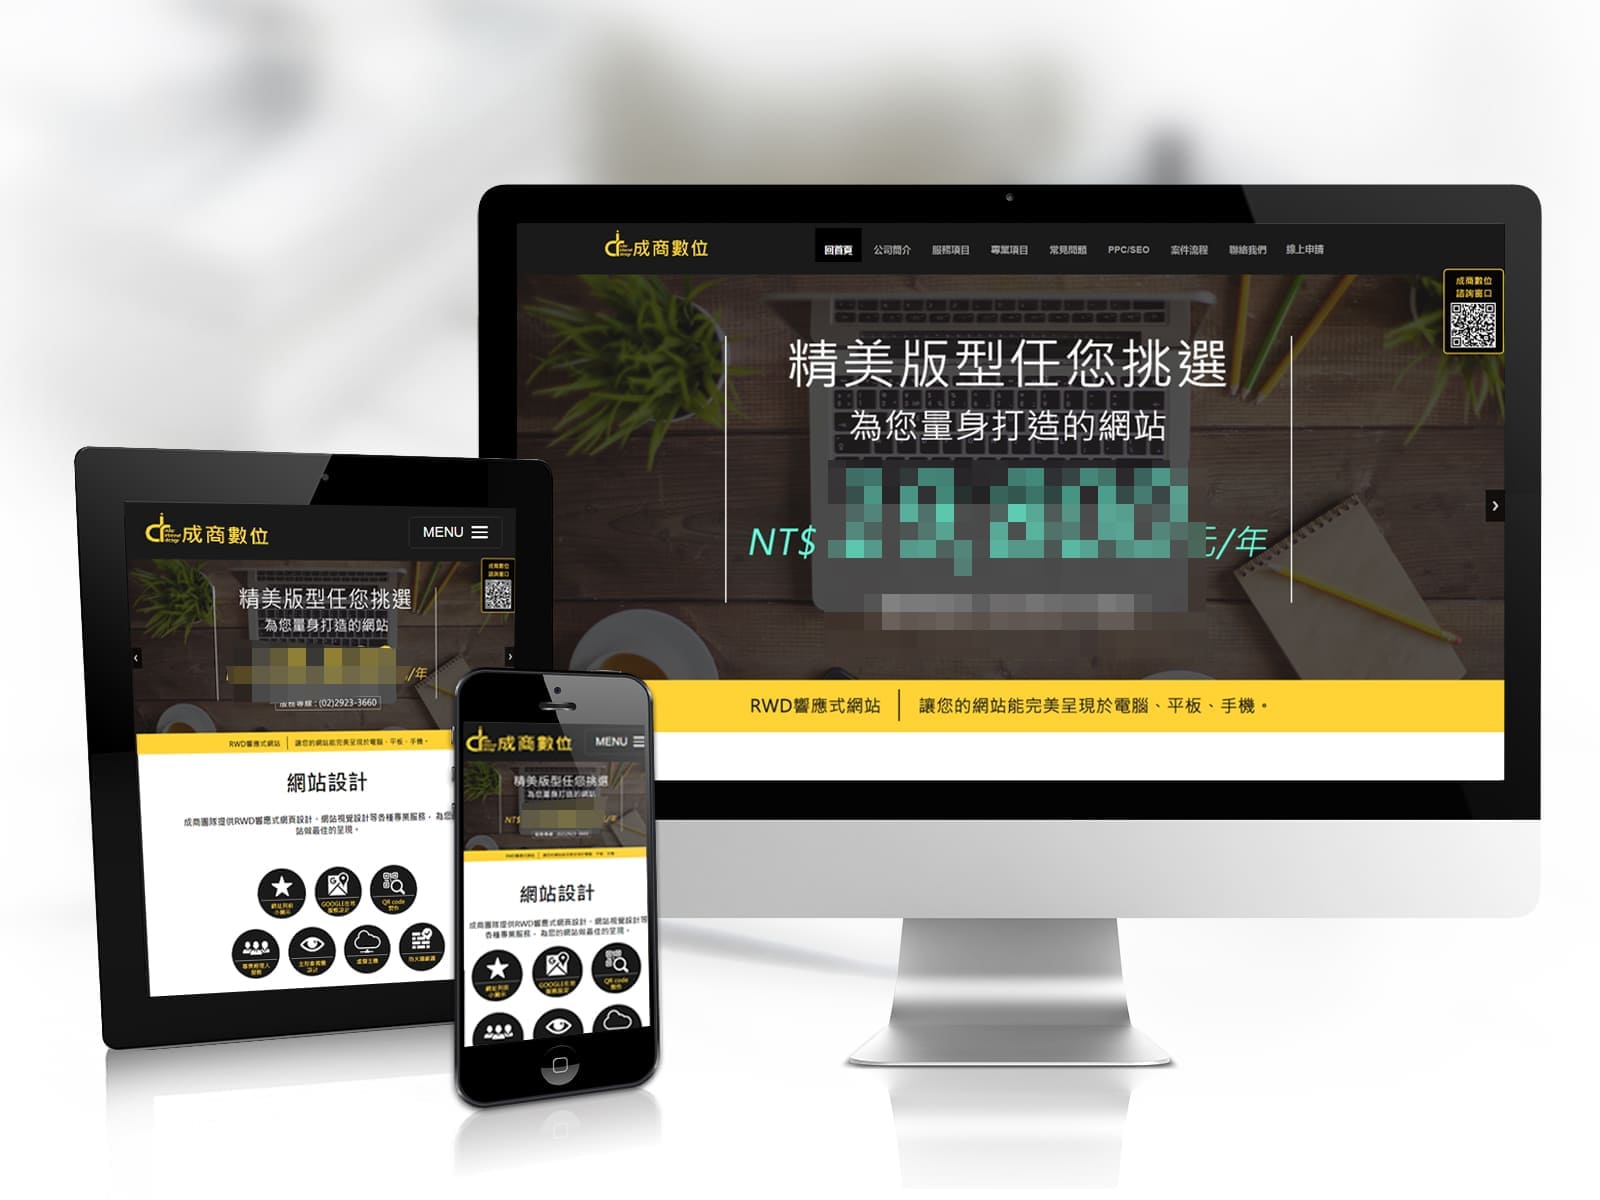 企業網站,客製化網站,響應式網站,成商數位,網頁設計,台南網頁設計公司,高雄網頁設計